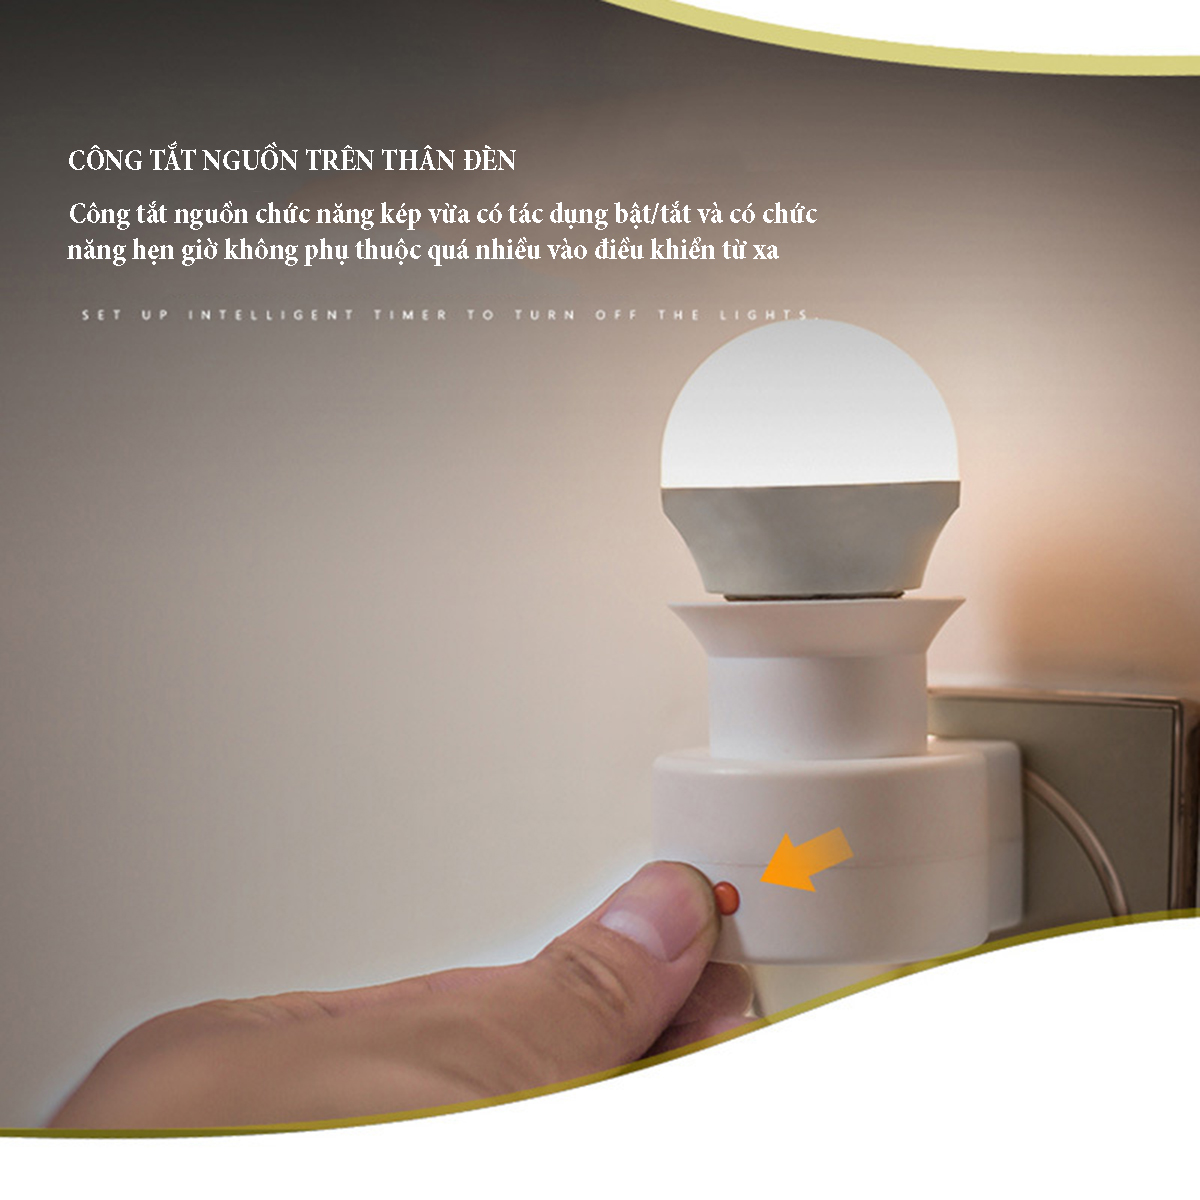 Đèn điều khiển từ xa ánh sáng vàng ấm với 3 chế độ sáng, chức năng hẹn giờ tắt 3 mốc thời gian, công suất bóng 220V/7W